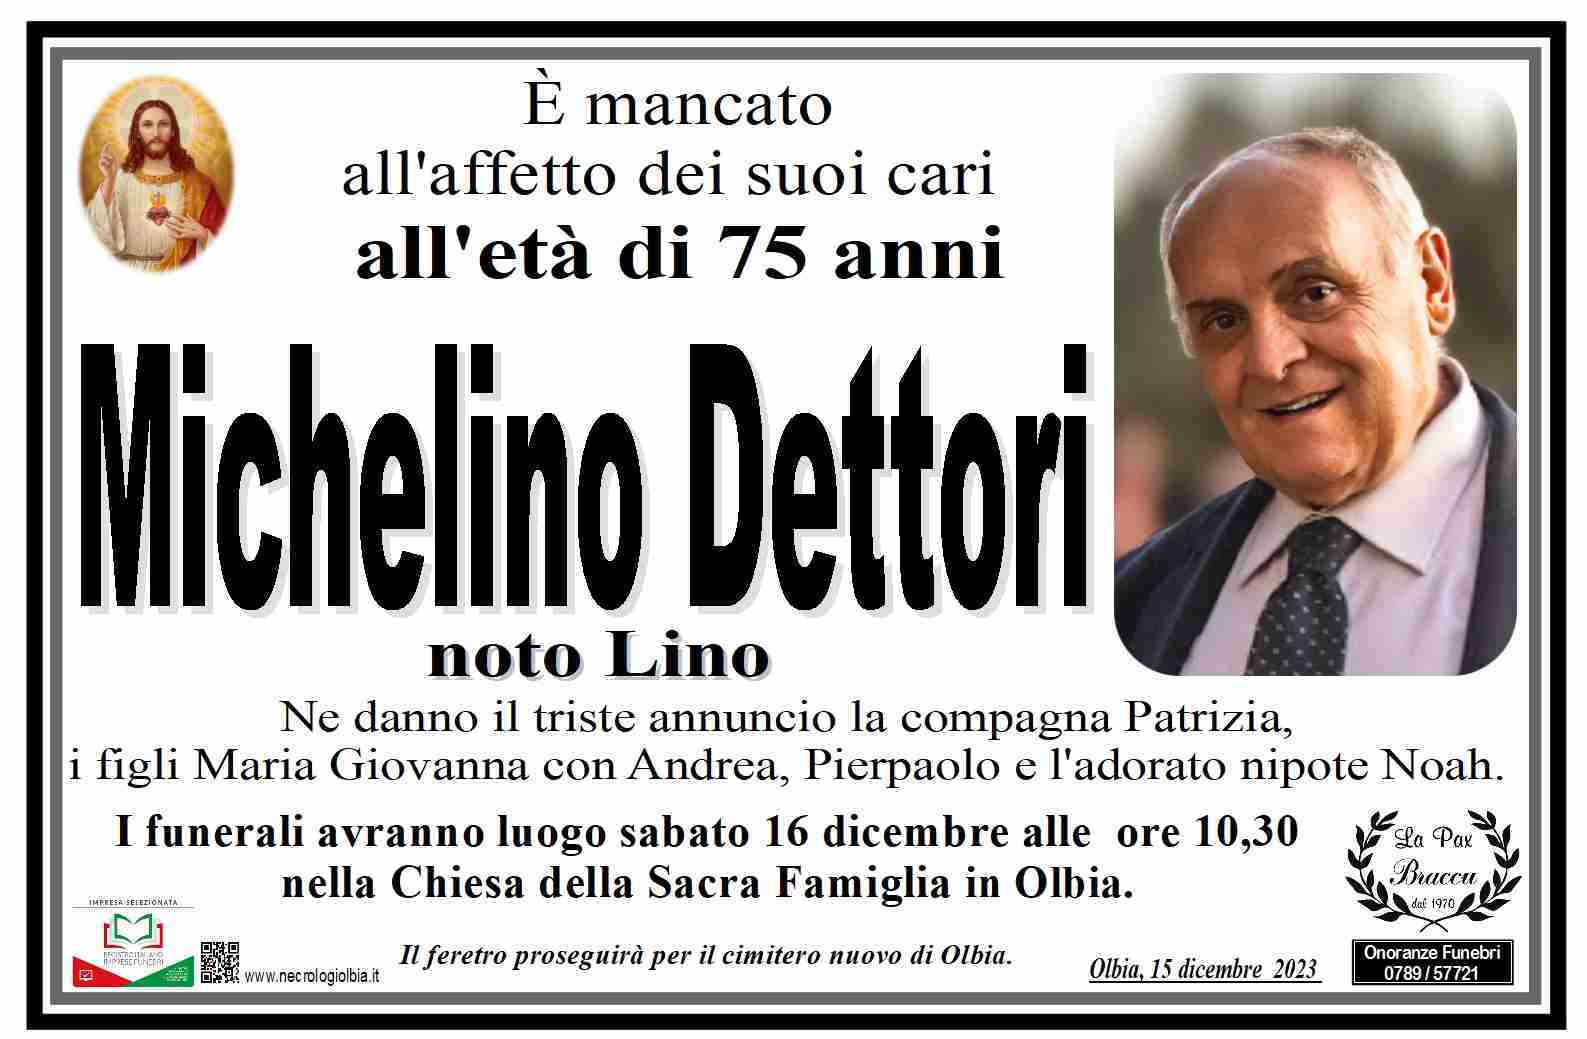 Michelino Dettori